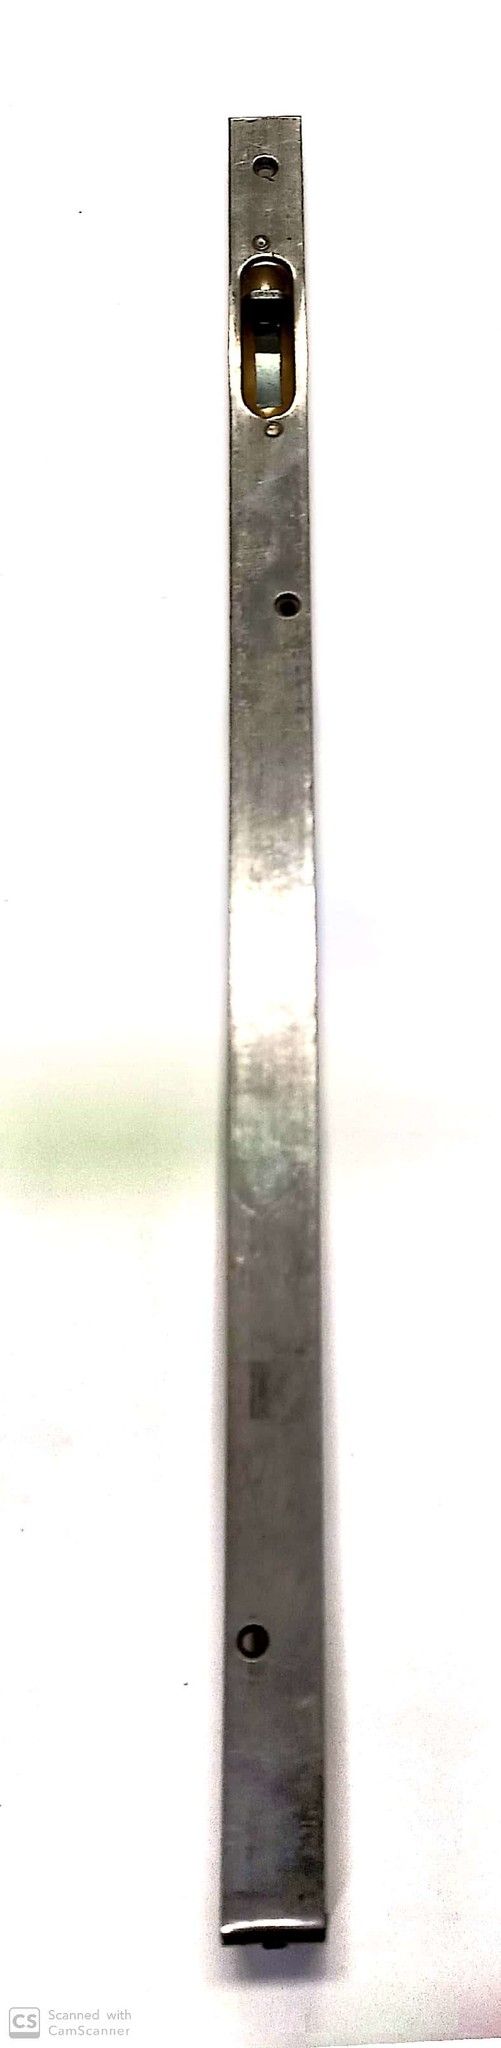 Catenaccio ad unghia cm 40 frontale mm 18 in ferro grezzo serie media